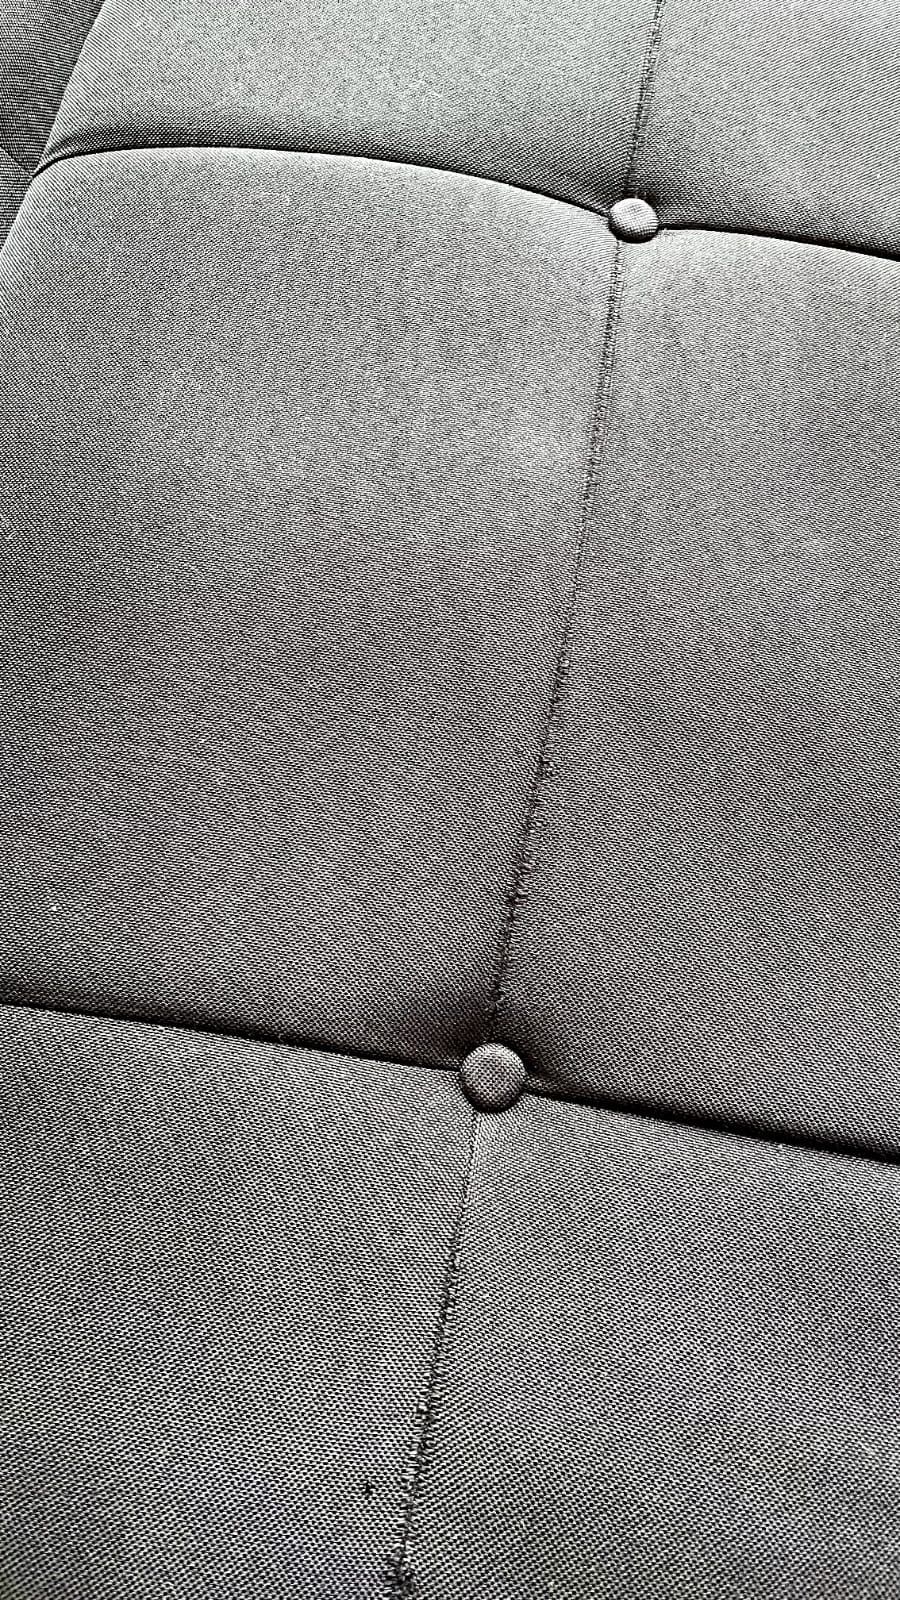 Sofa rozkładana Edland czarna Beliani